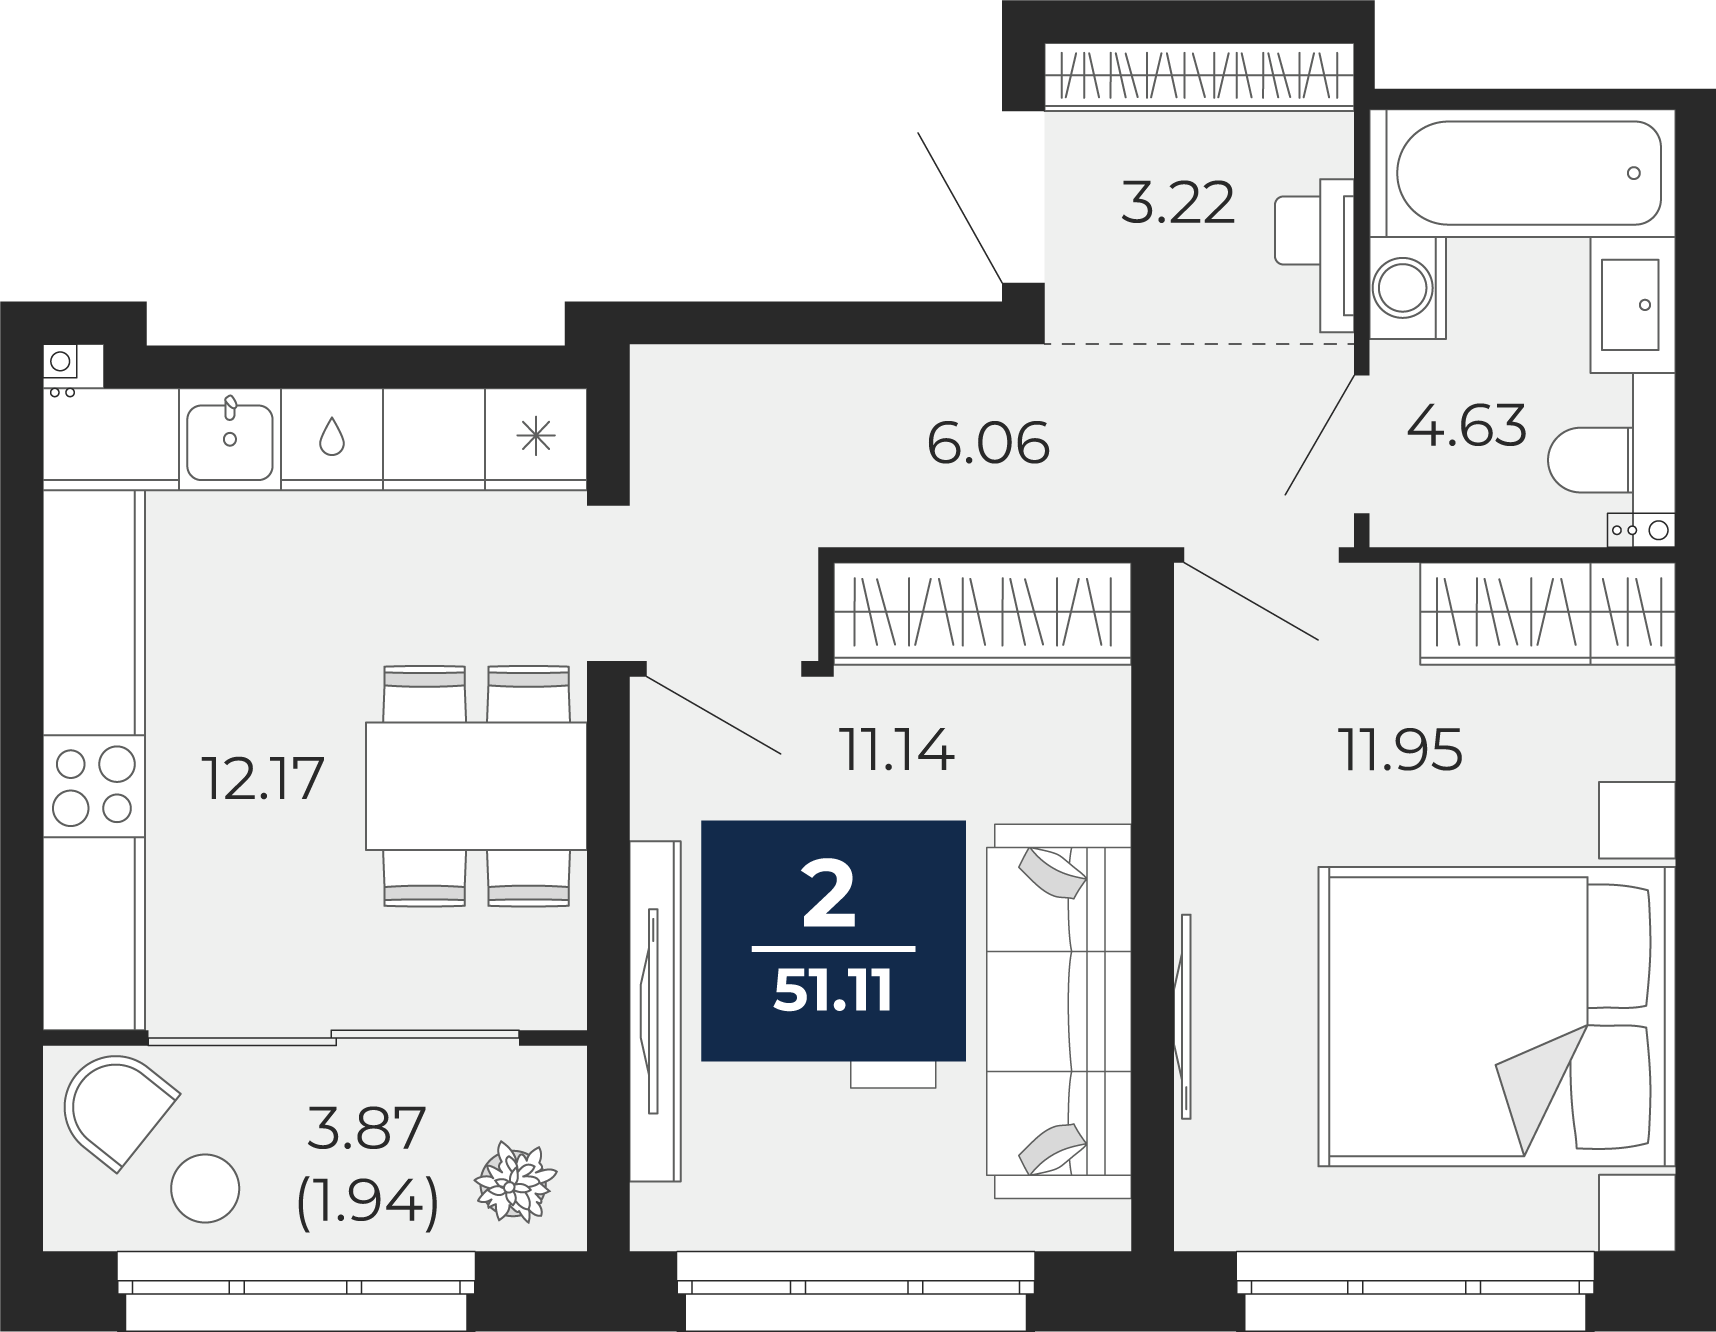 Квартира № 24, 2-комнатная, 51.11 кв. м, 6 этаж